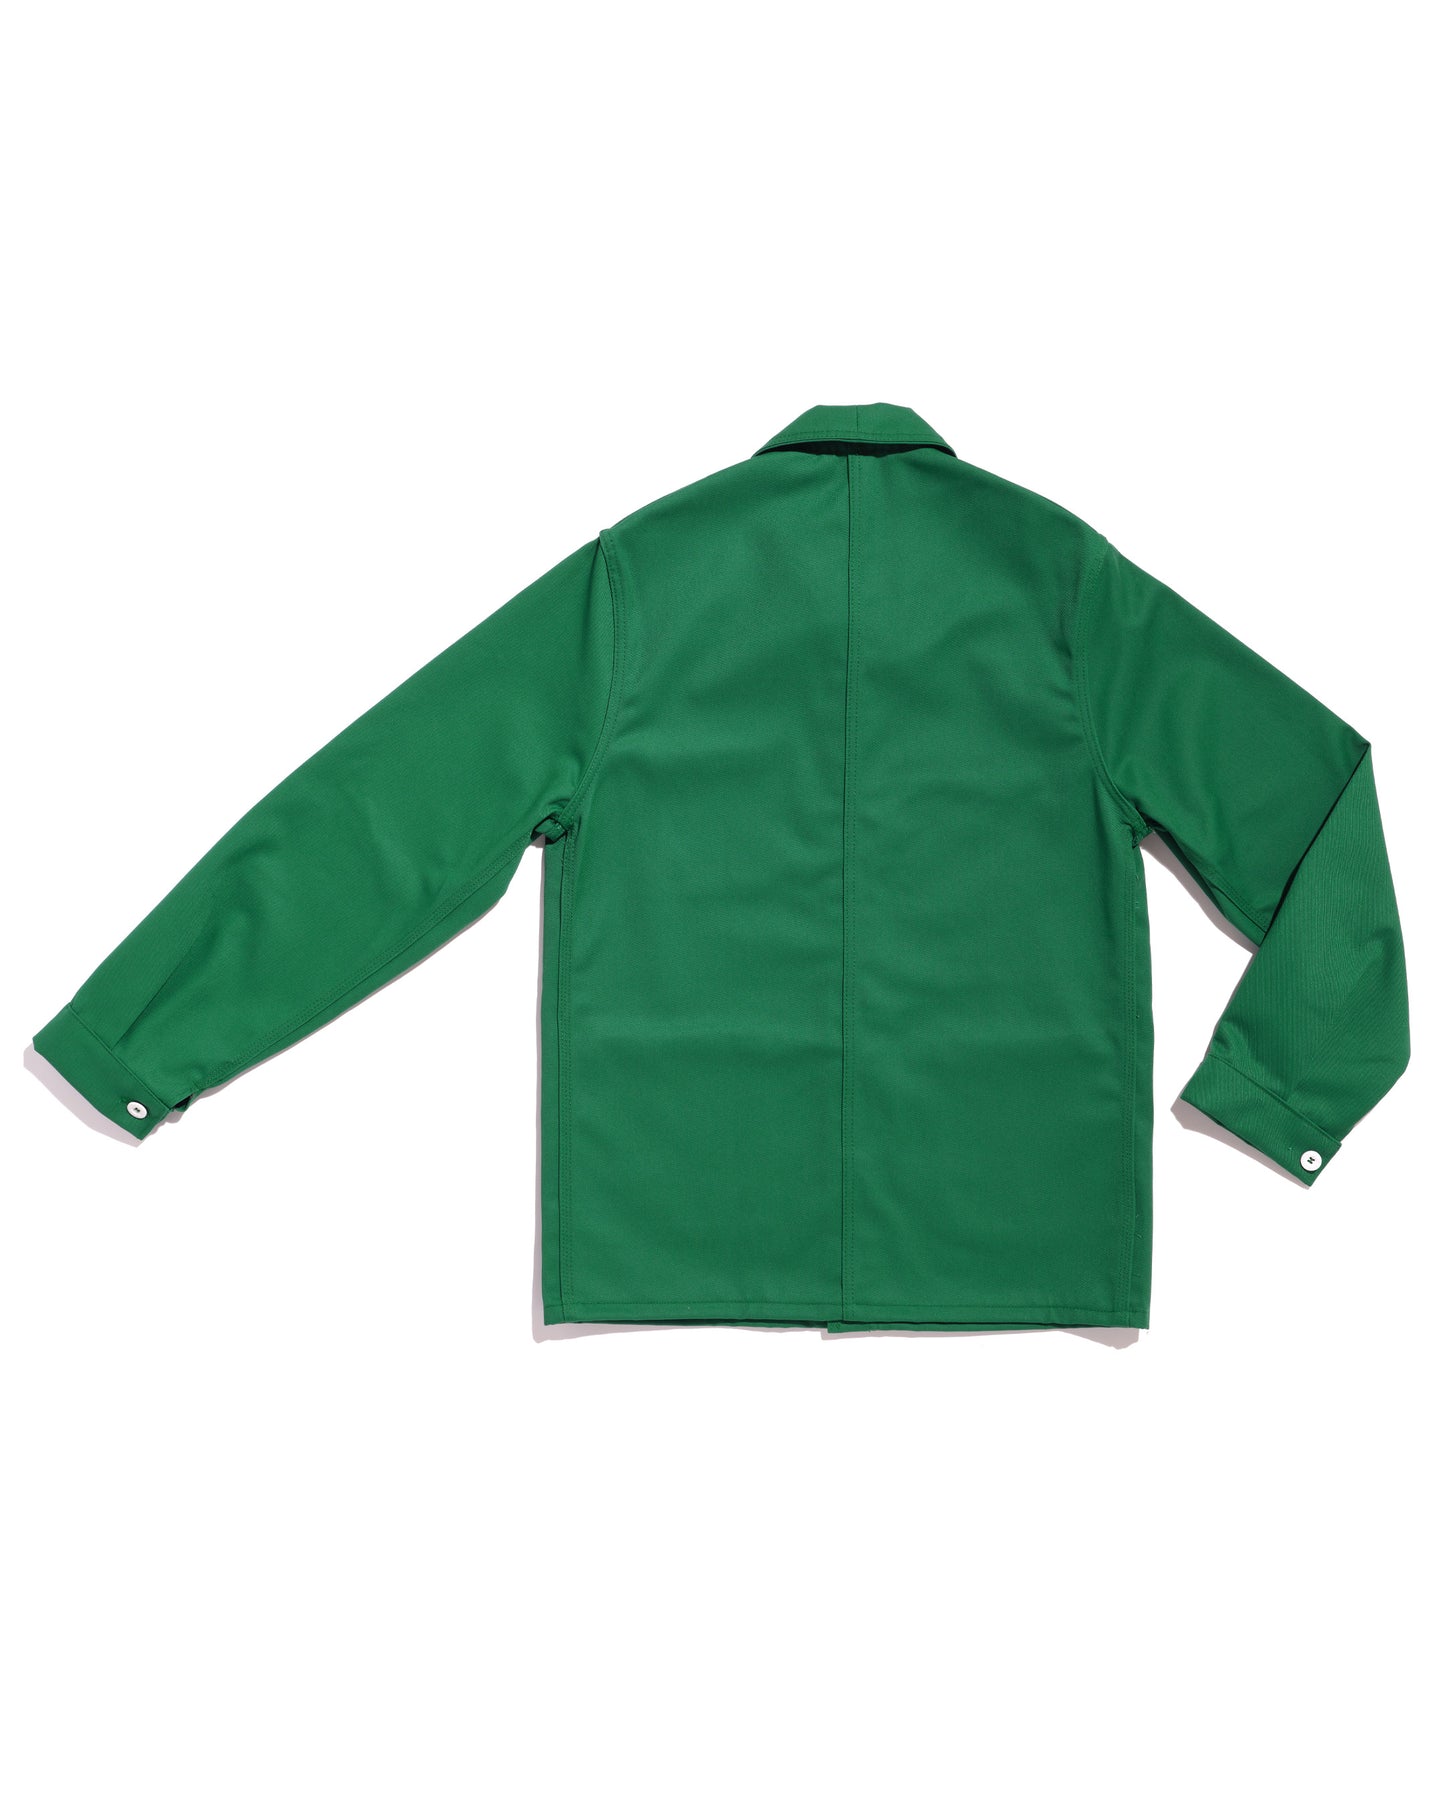 Le Laboureur meadow green work jacket